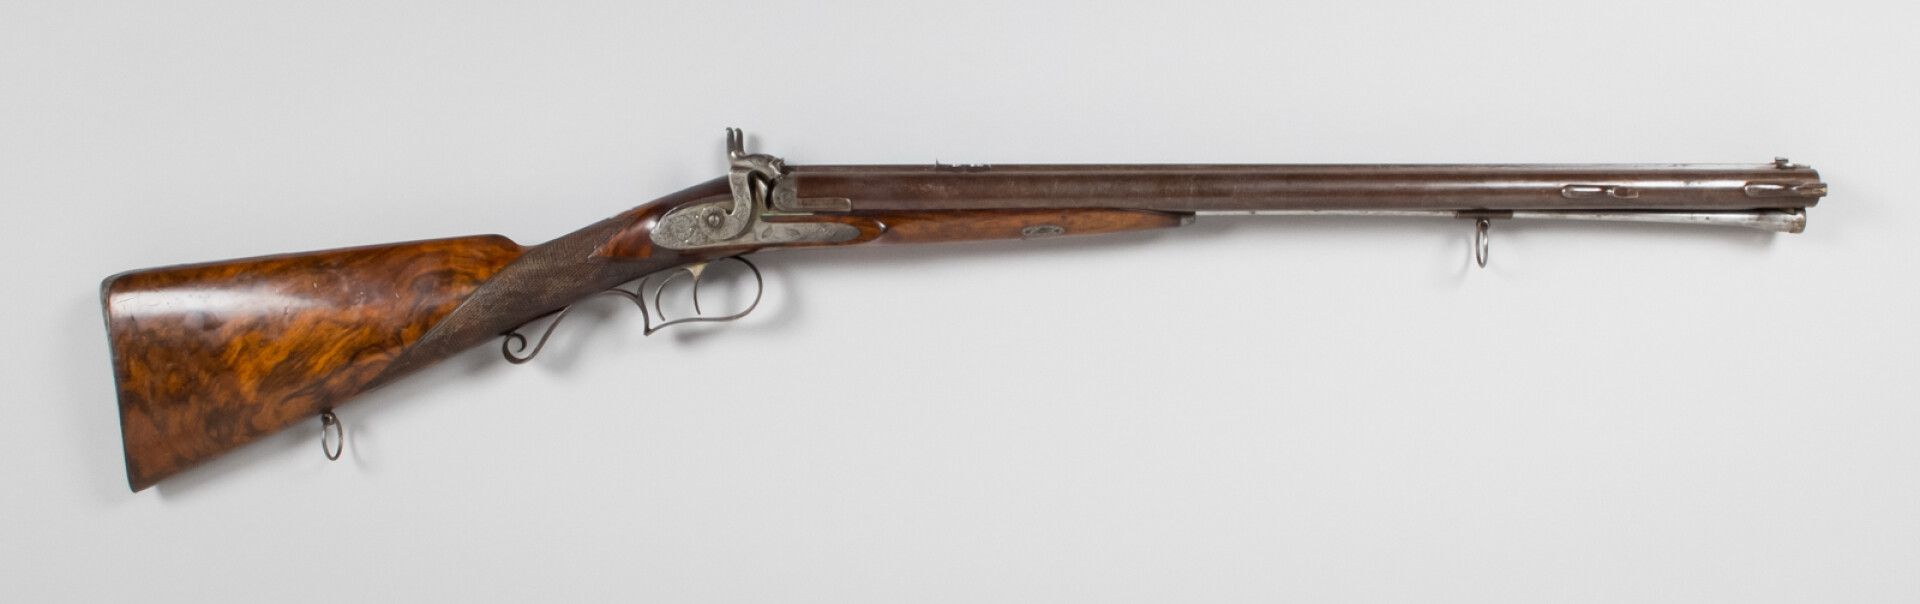 Null 
特殊的并列式猎枪，由巴黎的Devisme制造，来自拿破仑三世的个人收藏，扳机护圈上镶嵌的冠状 "N "证明了这一点。前部打击盖，600毫米大马士革枪&hellip;